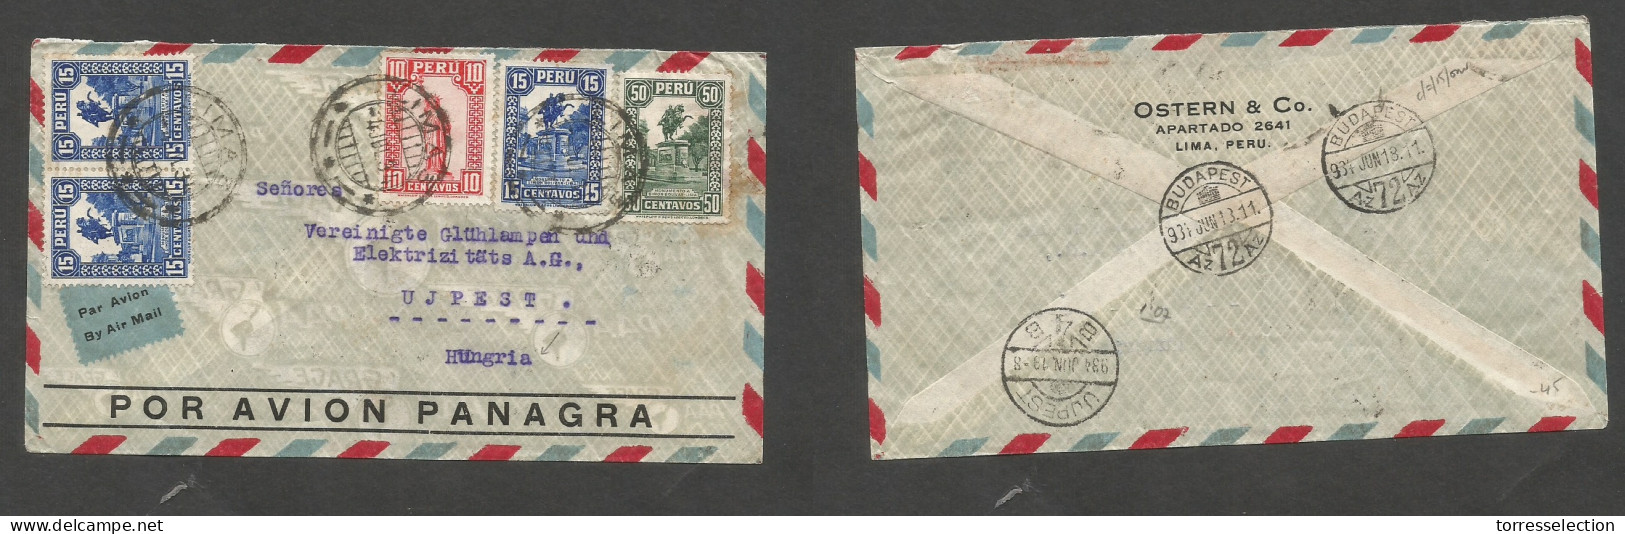 PERU. 1934 (4 June) Lima - Hungary, Ujpest (13 June) Air Multifkd Env, At 1,05 Ps Rate. VF + Air Label. - Peru